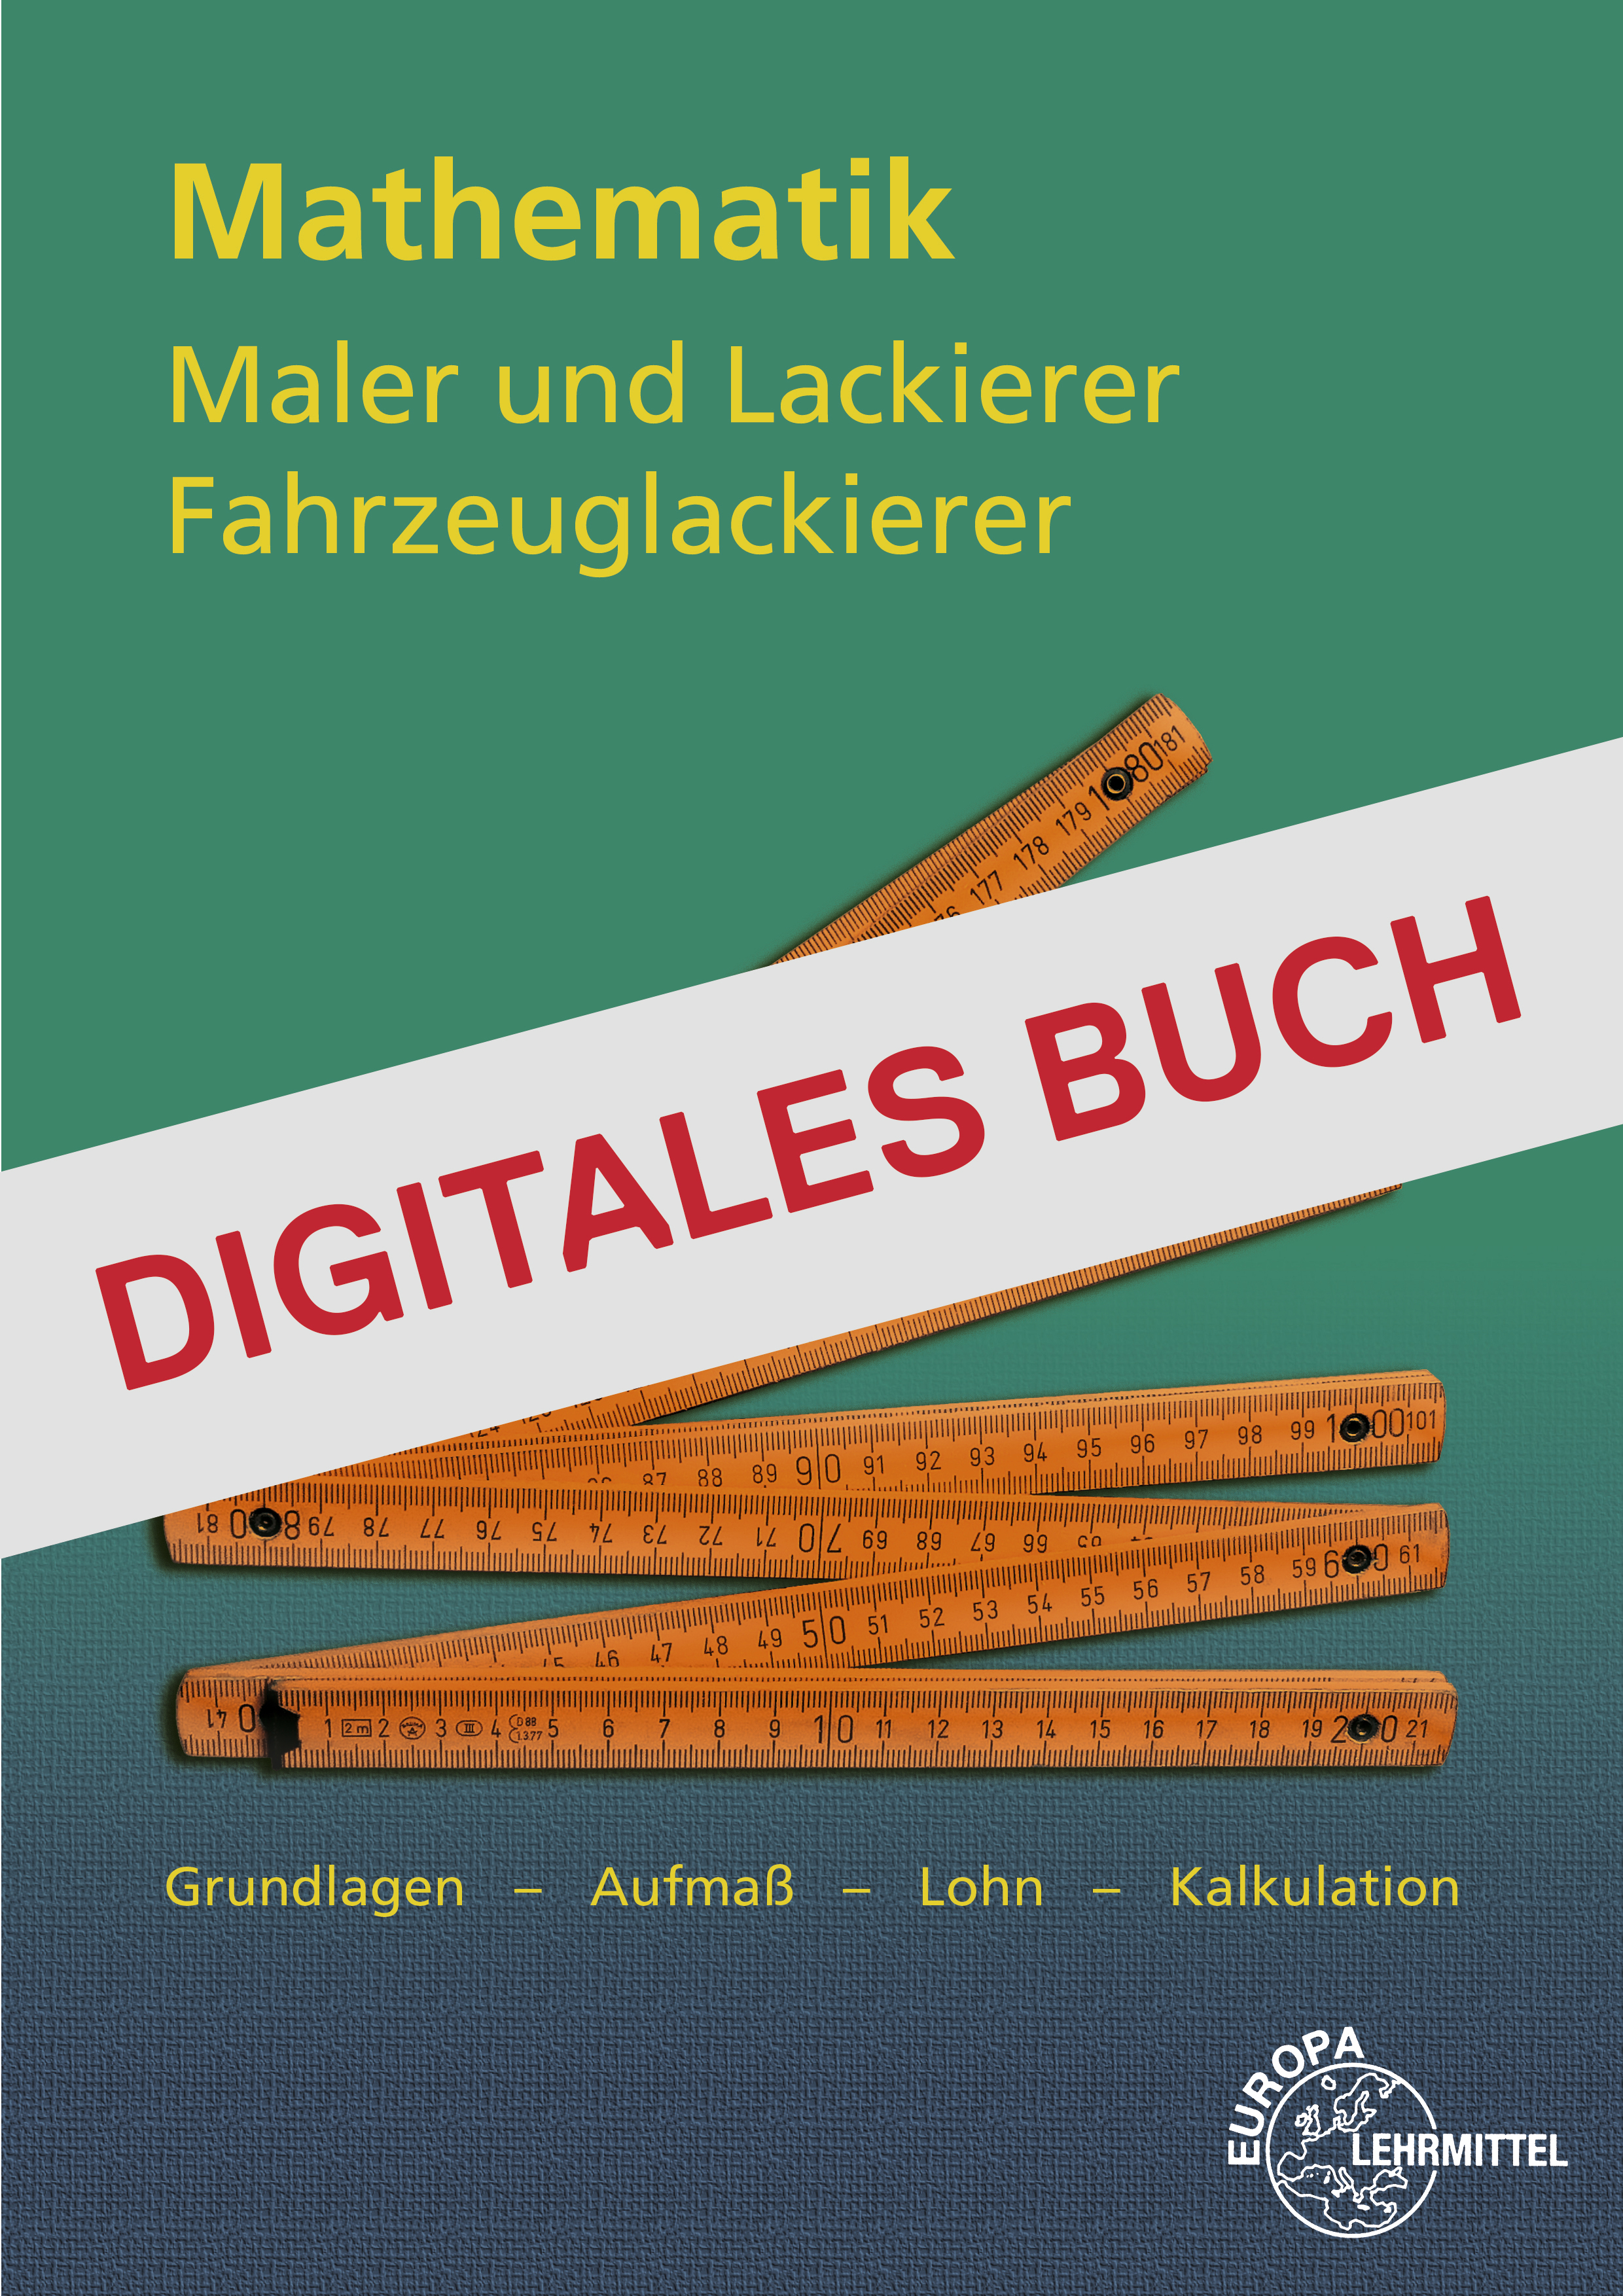 Mathematik für Maler und Lackierer, Fahrzeuglackierer - Digitales Buch